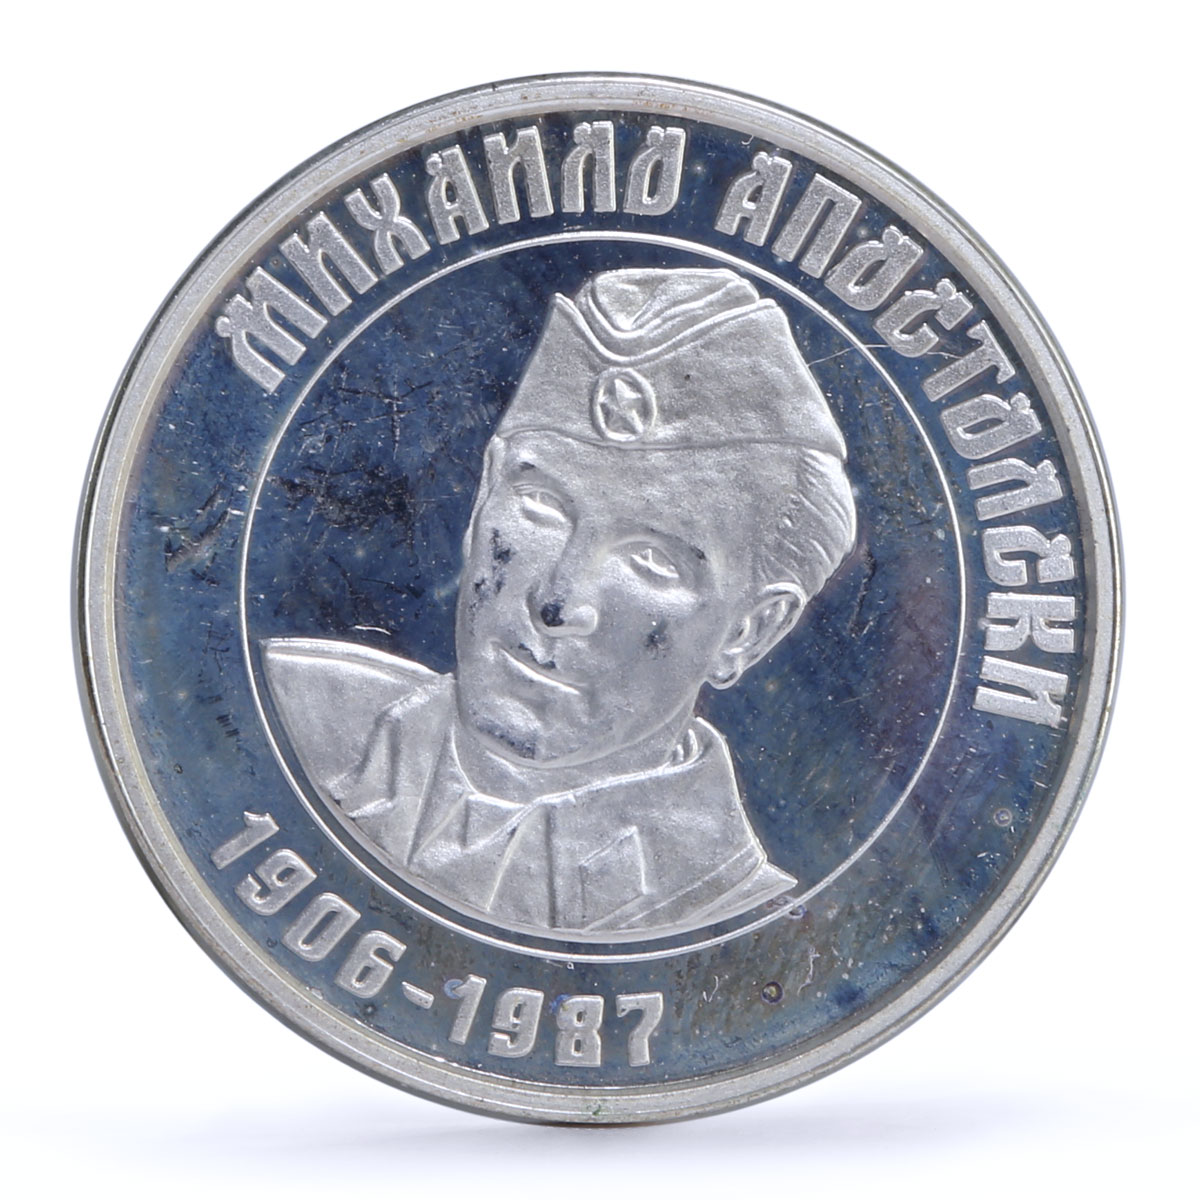 Macedonia 100 denari Statehood Mikhailo Apostolski Politics proba Ag coin 2003